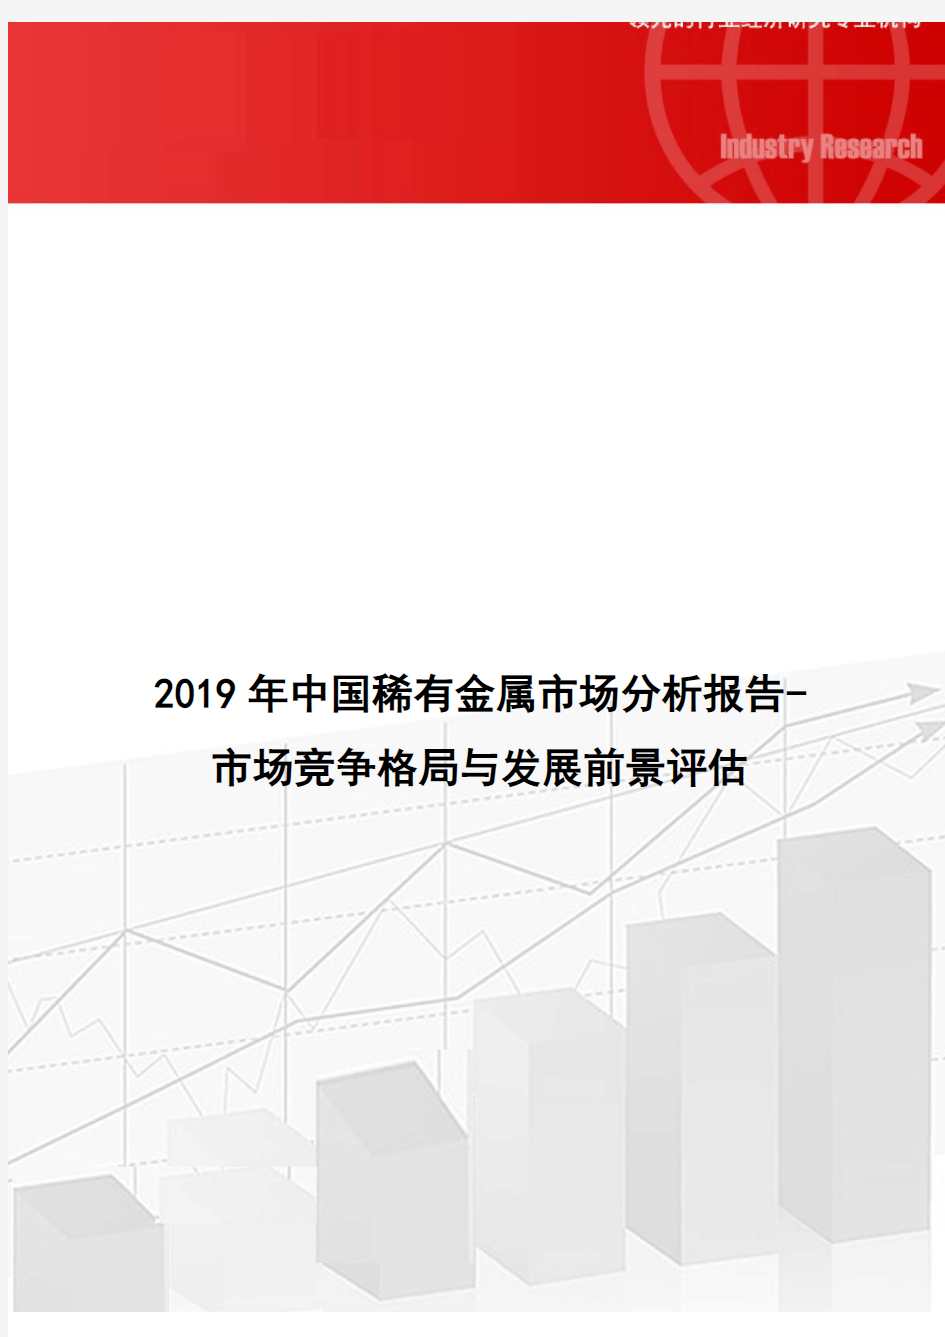 2019年中国稀有金属市场分析报告-市场竞争格局与发展前景评估